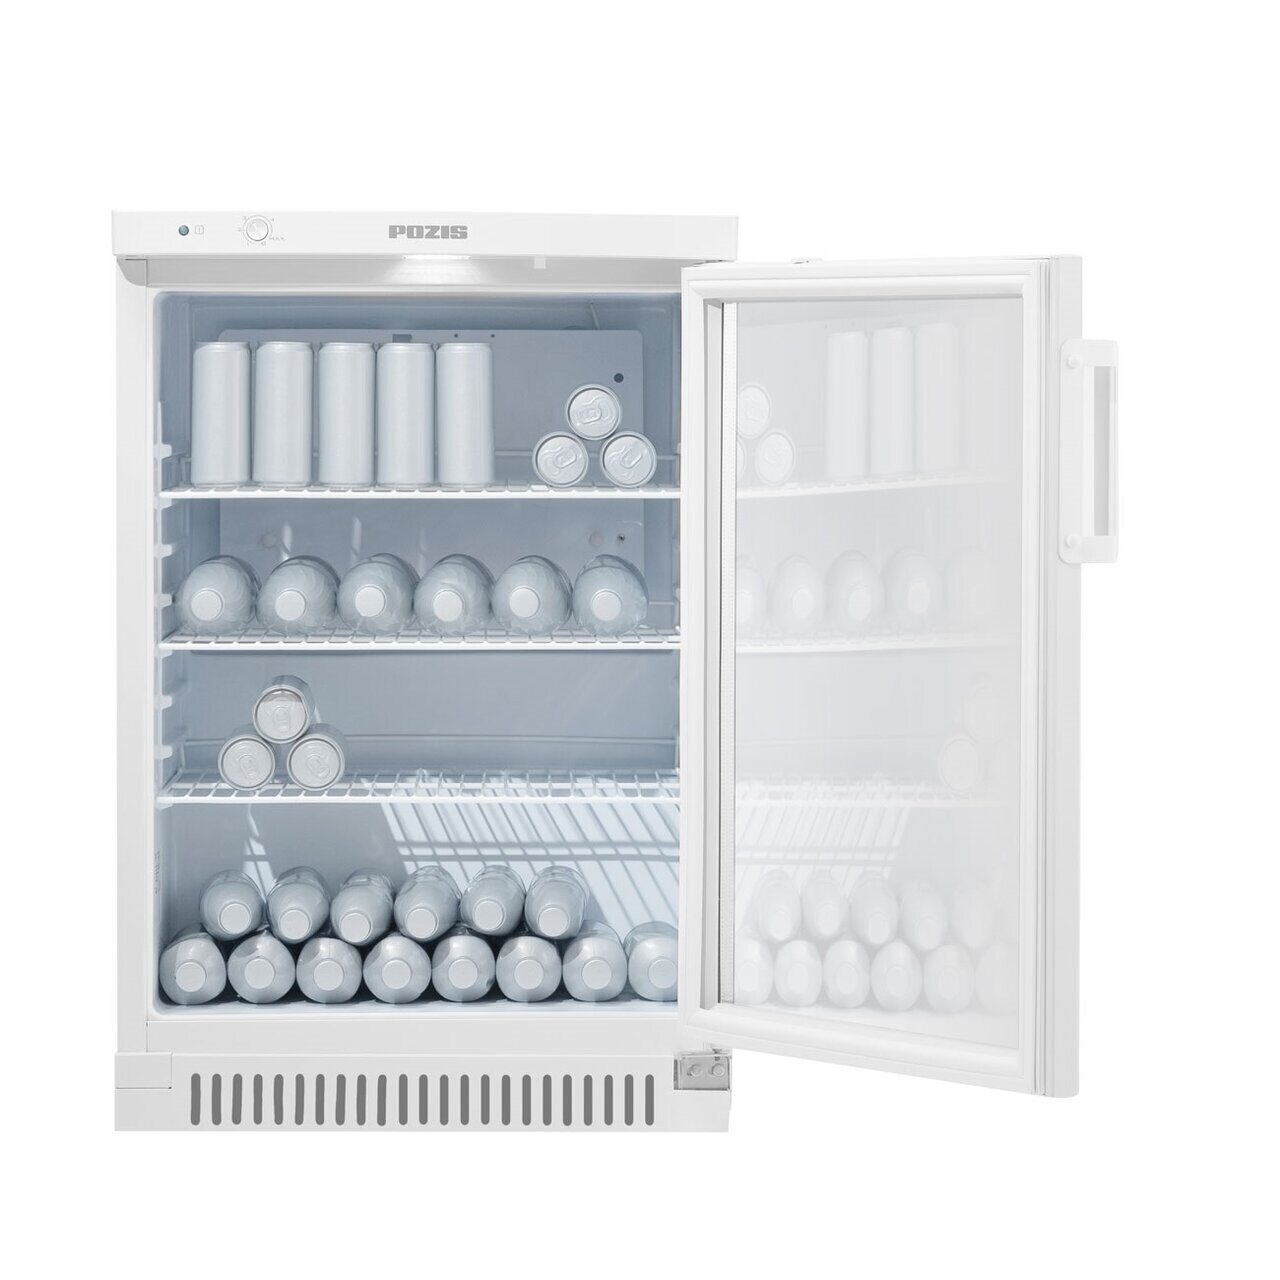 Холодильный шкаф Pozis Свияга-514